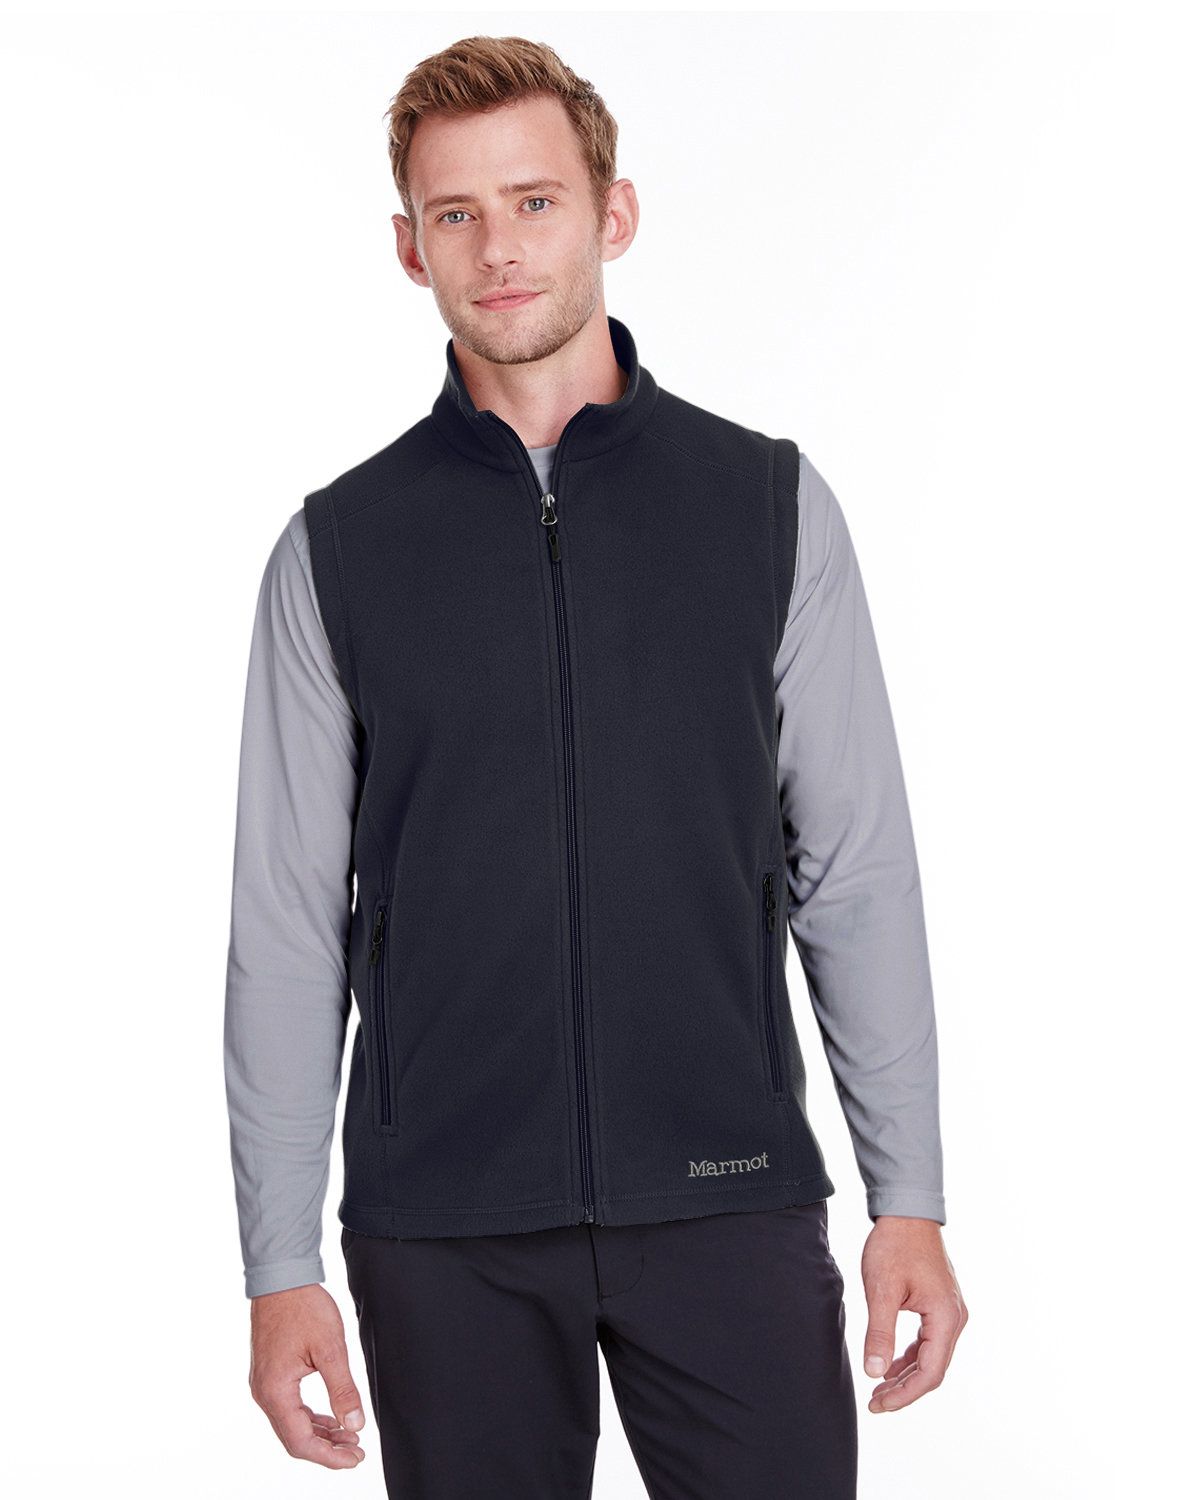 Marmot 901077 - Men's Rocklin Fleece Vest $42.90 - Outerwear